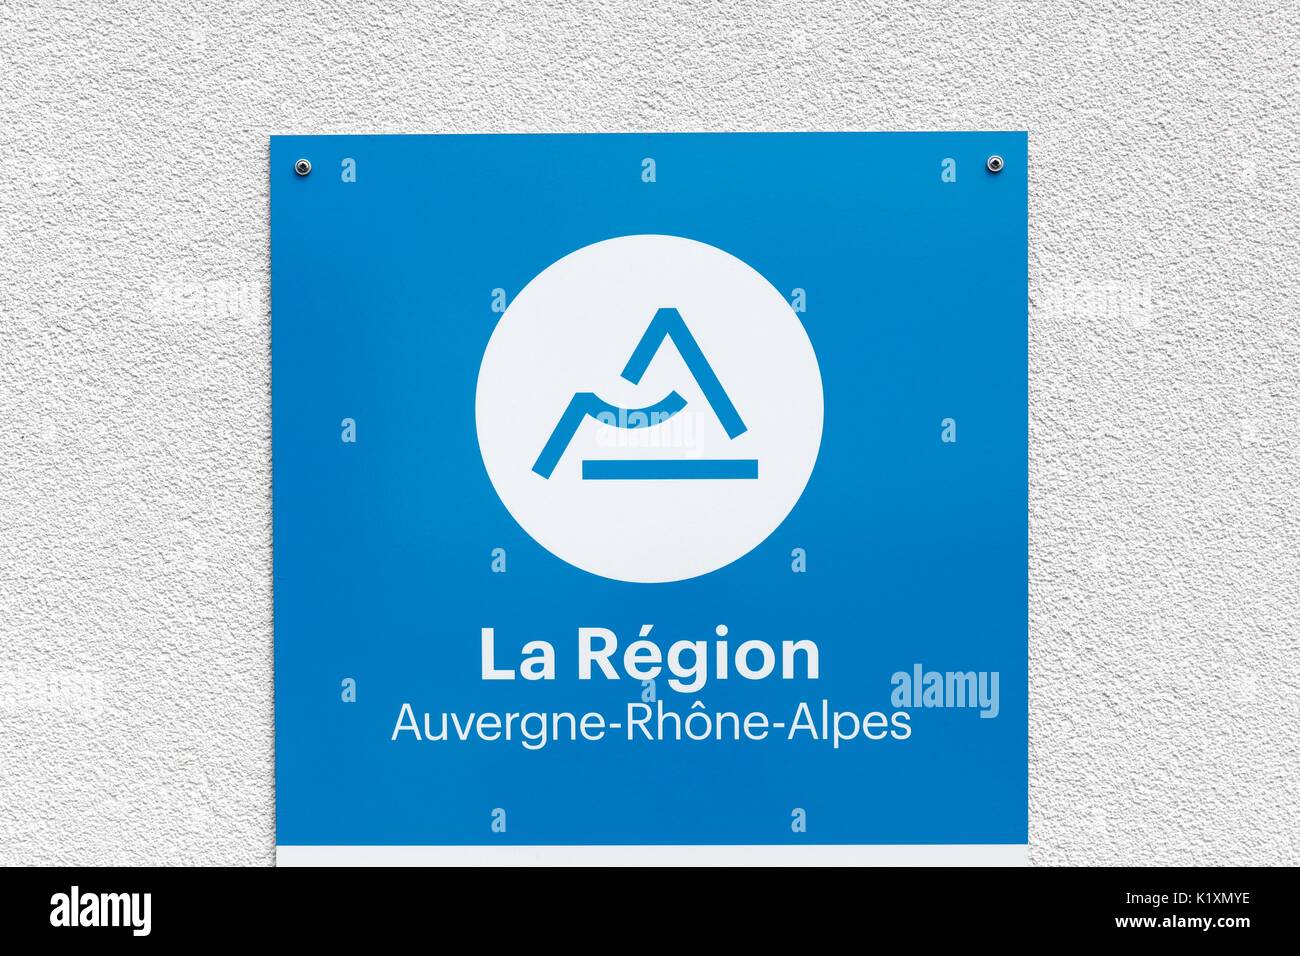 Lione, Francia - 27 luglio 2017: regione Auvergne RHONE-ALPES in Francia segno su una parete Foto Stock